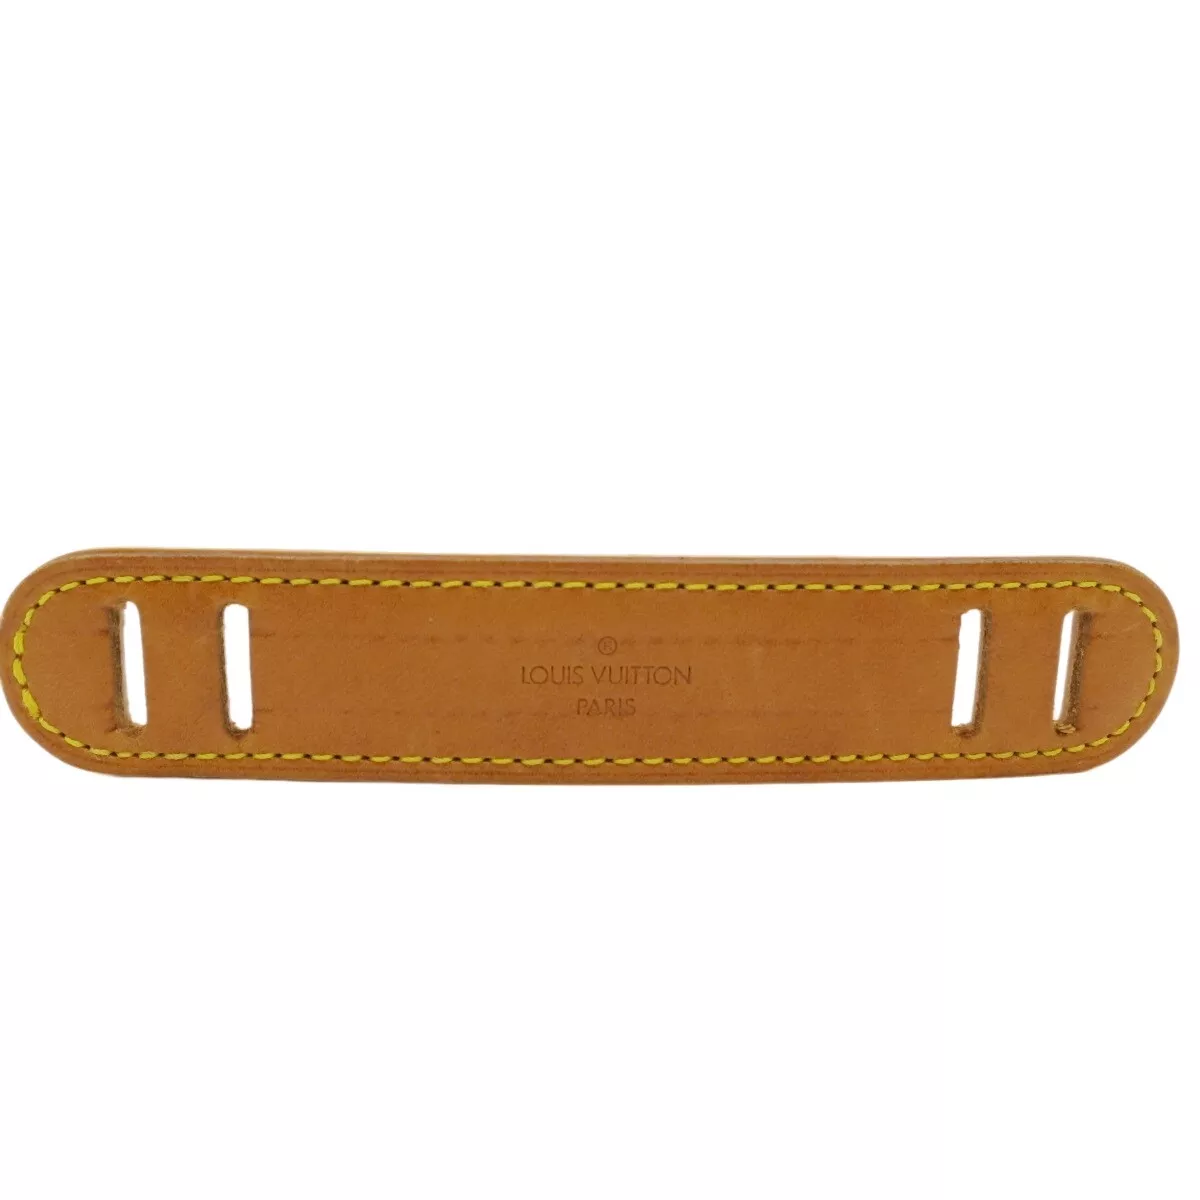 Authentic LOUIS VUITTON Shoulder Strap Shoulder Pad Brown Leather #204044